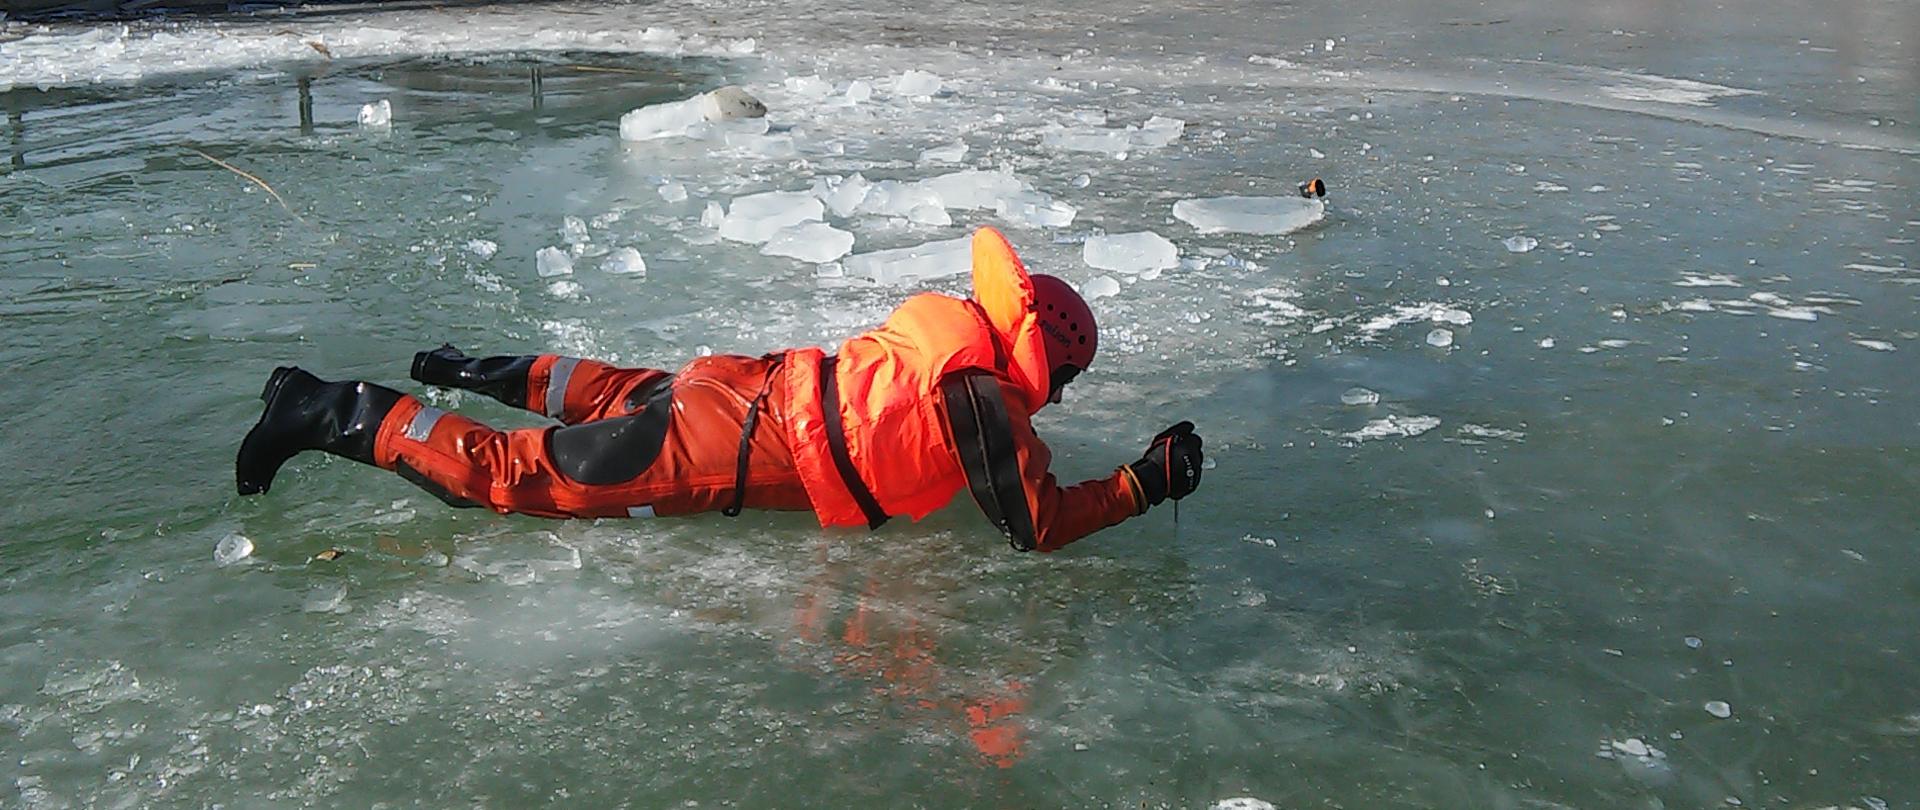 Człowiek próbuje wydostać się z przerębli lodowej. Ubrany jest w skafander wodoszczelny oraz kask i kamizelkę ratunkową. Na drugim planie brzeg akwenu z infrastrukturą.